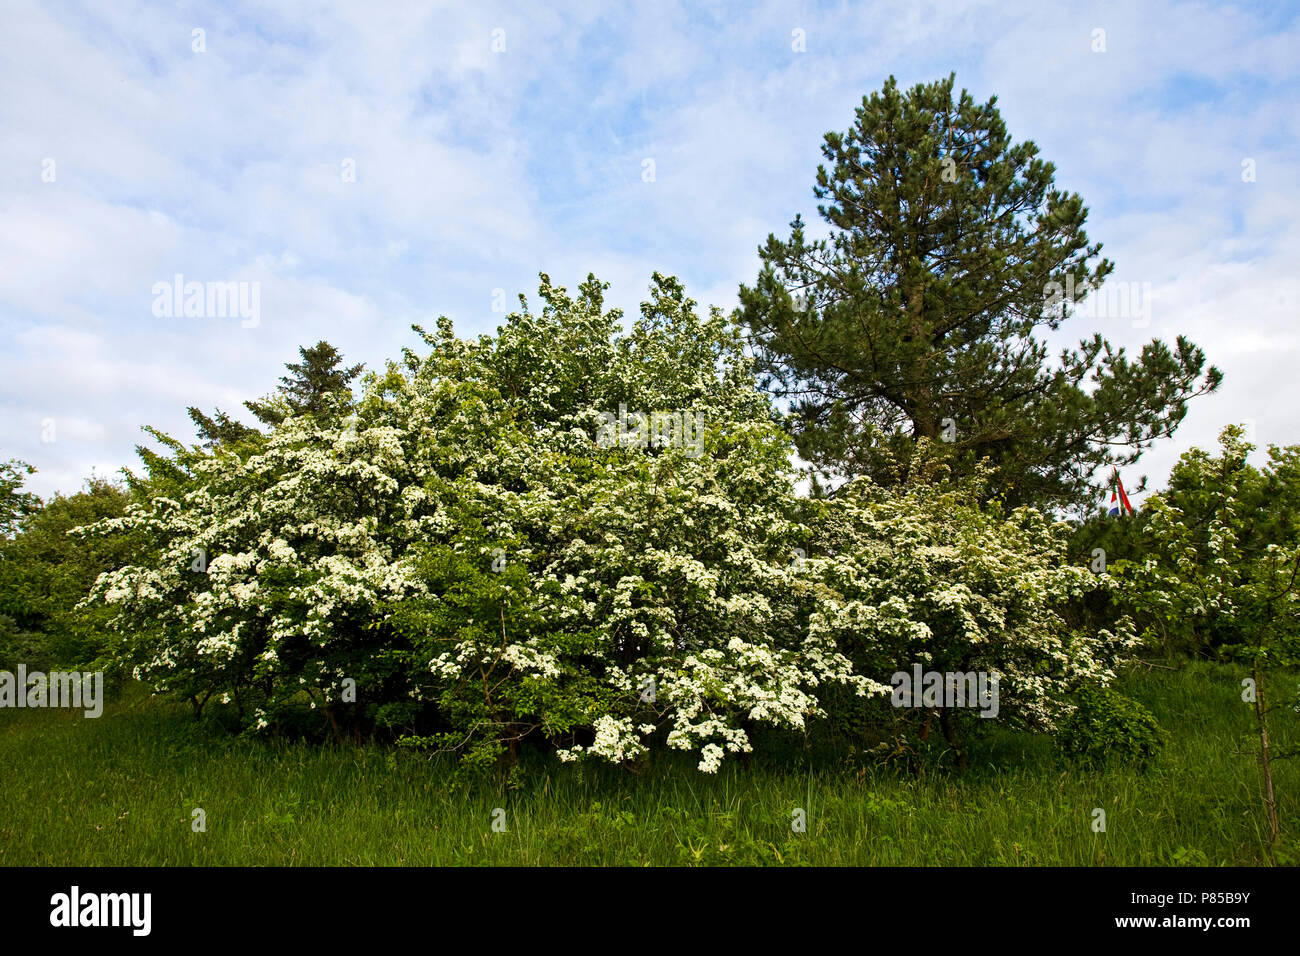 Meidoorn in bloei; Hawthorn in bloom Stock Photo